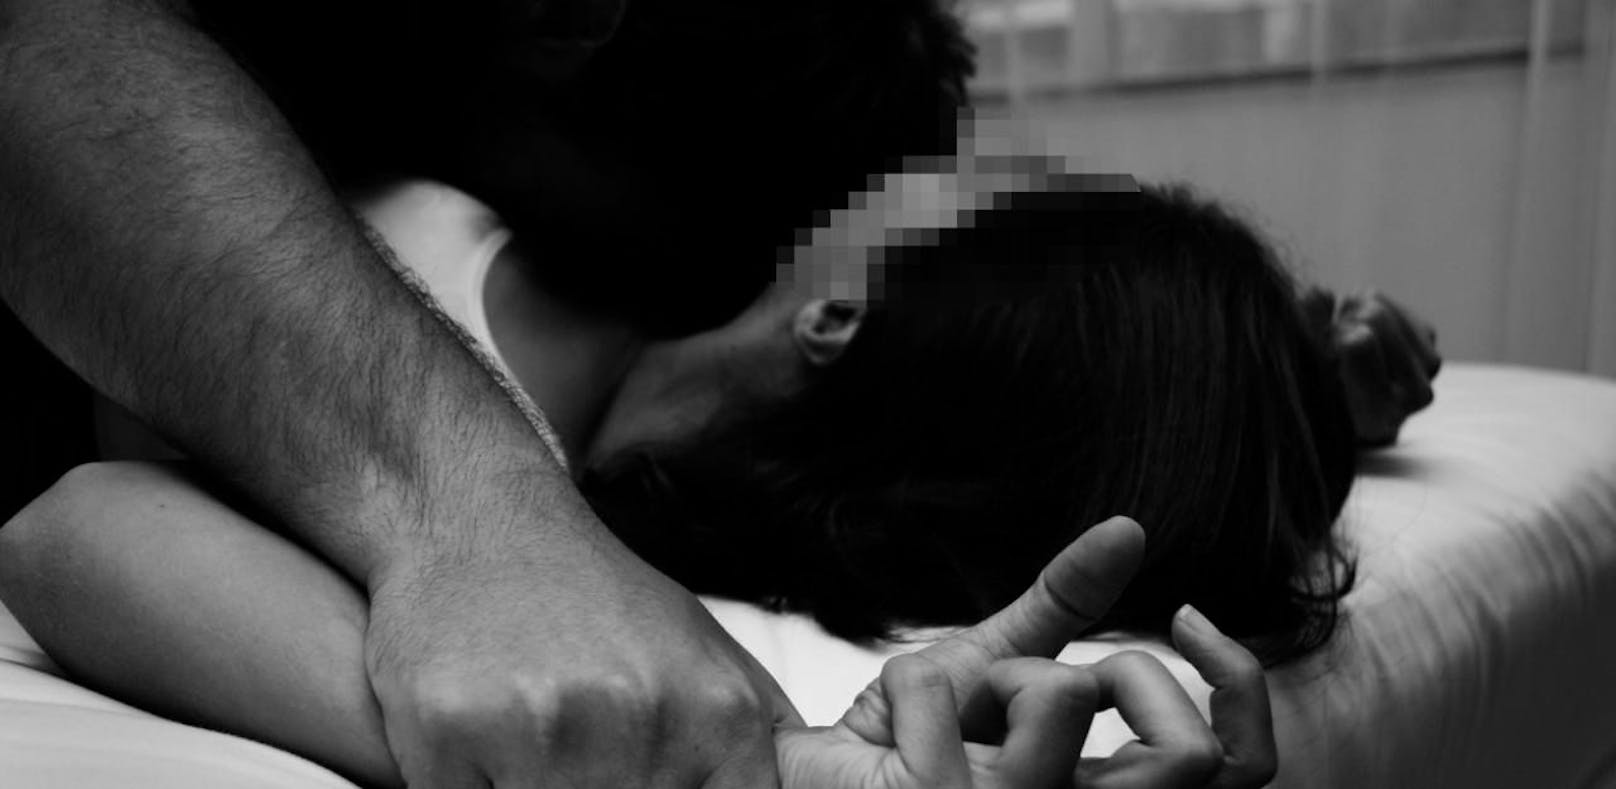 Ein 12-Jähriger soll eine gleichaltrige Mitschülerin sexuell missbraucht haben